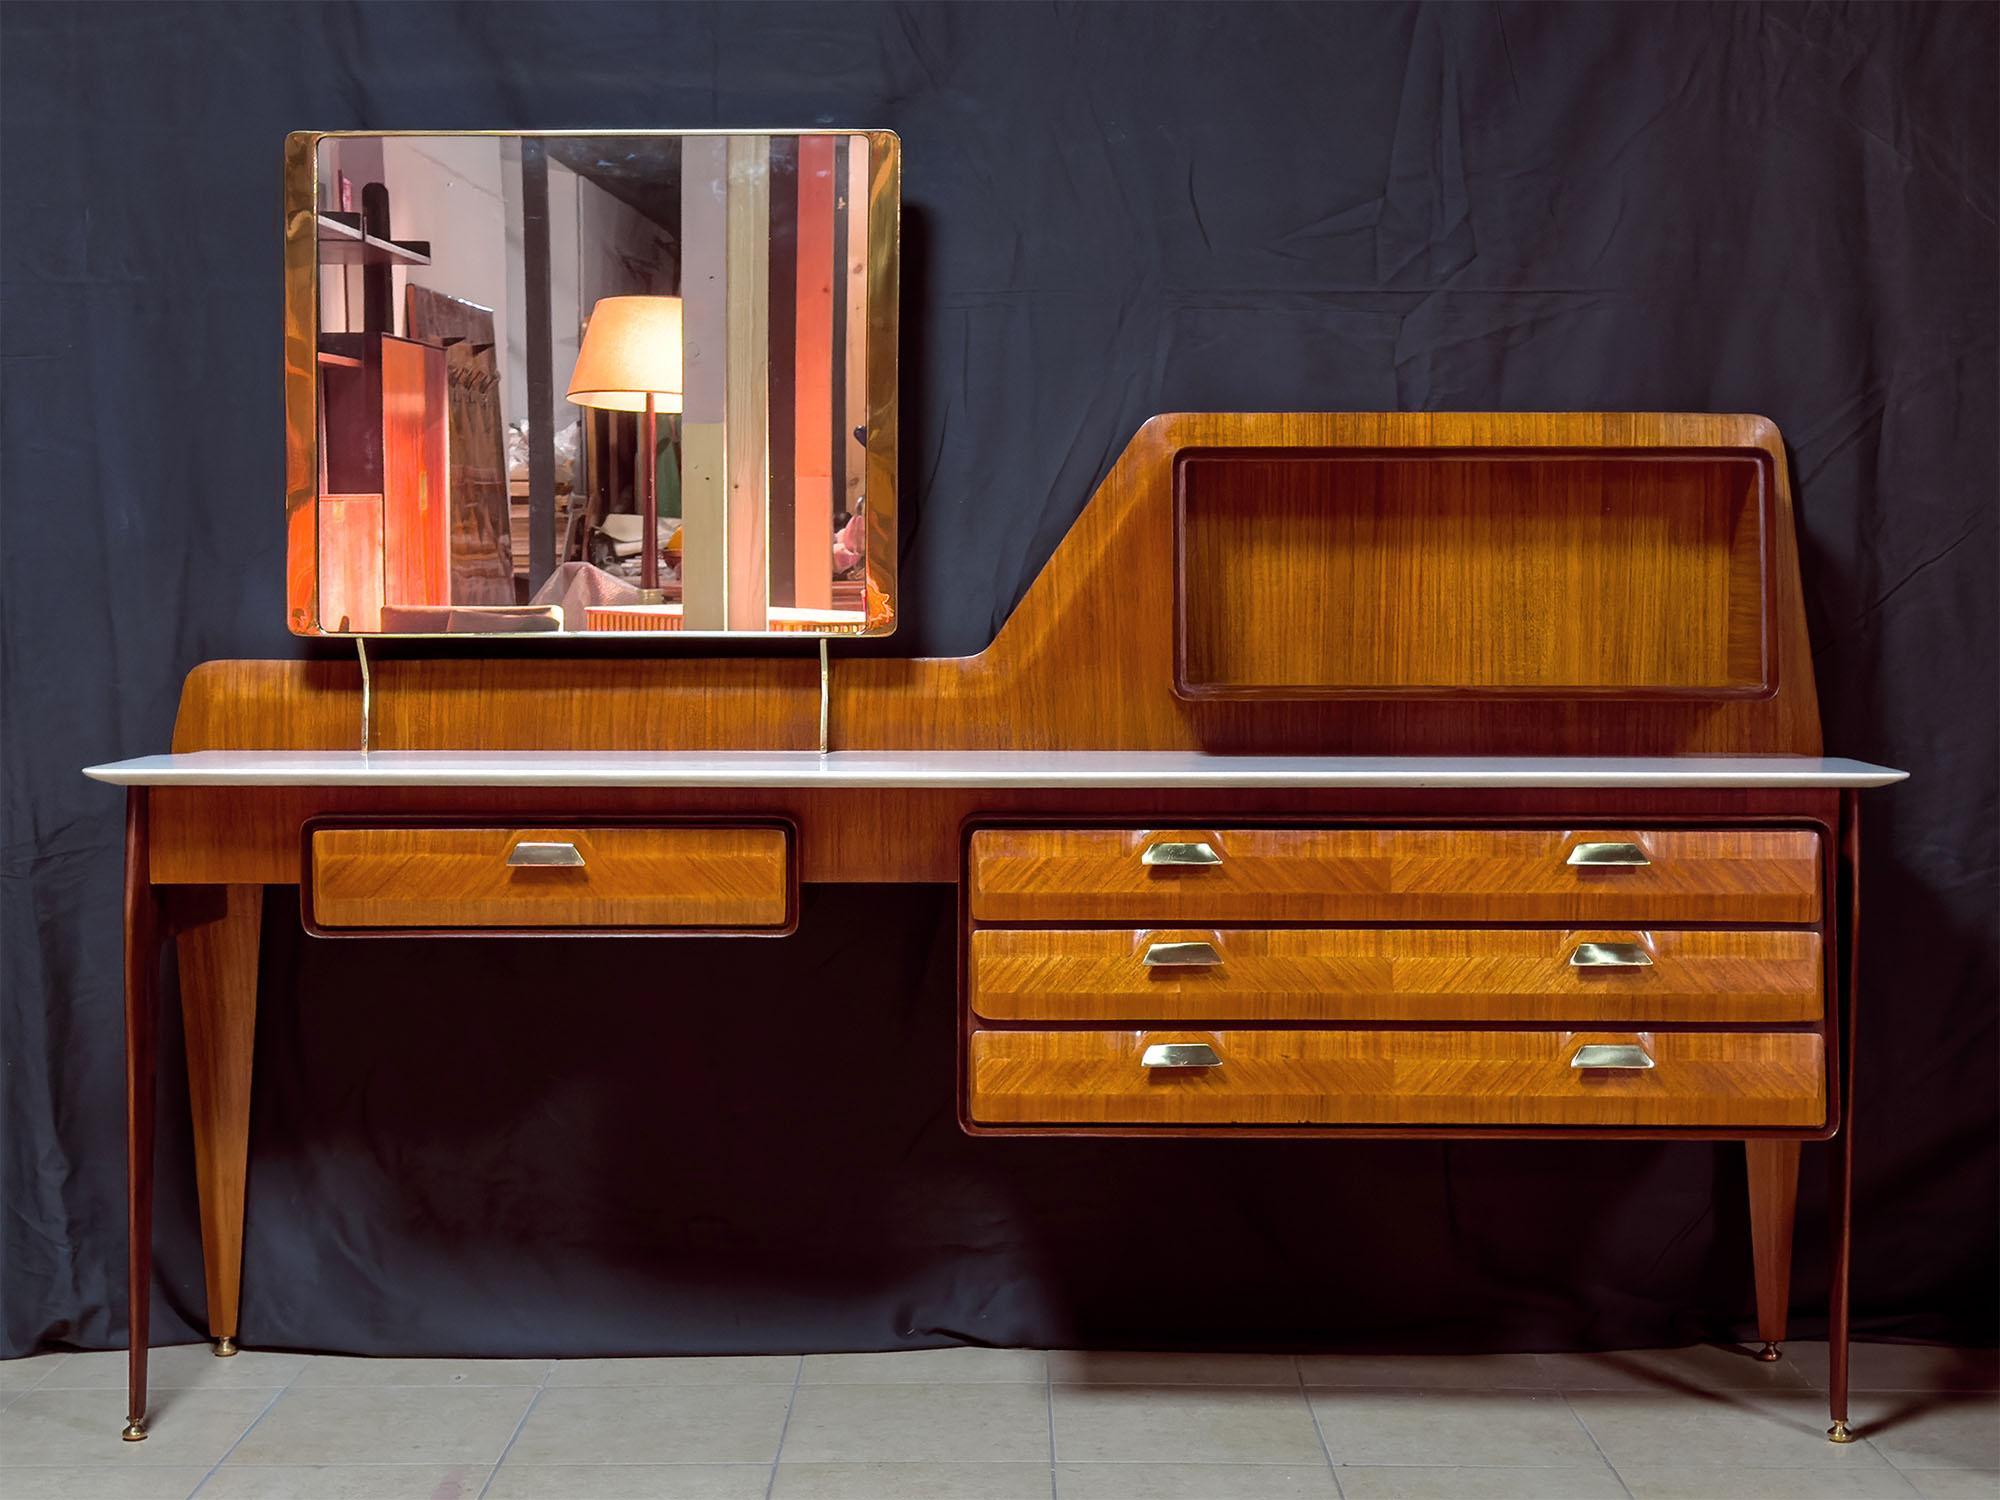 Wunderschönes Sideboard und/oder Kommode aus Teakholz, hergestellt von La Permanente Mobili Cantù in den 1950er Jahren.

Seine ästhetische Einzigartigkeit wird durch die originelle, weiche, skulpturale Form der Struktur und die seitlichen, konischen